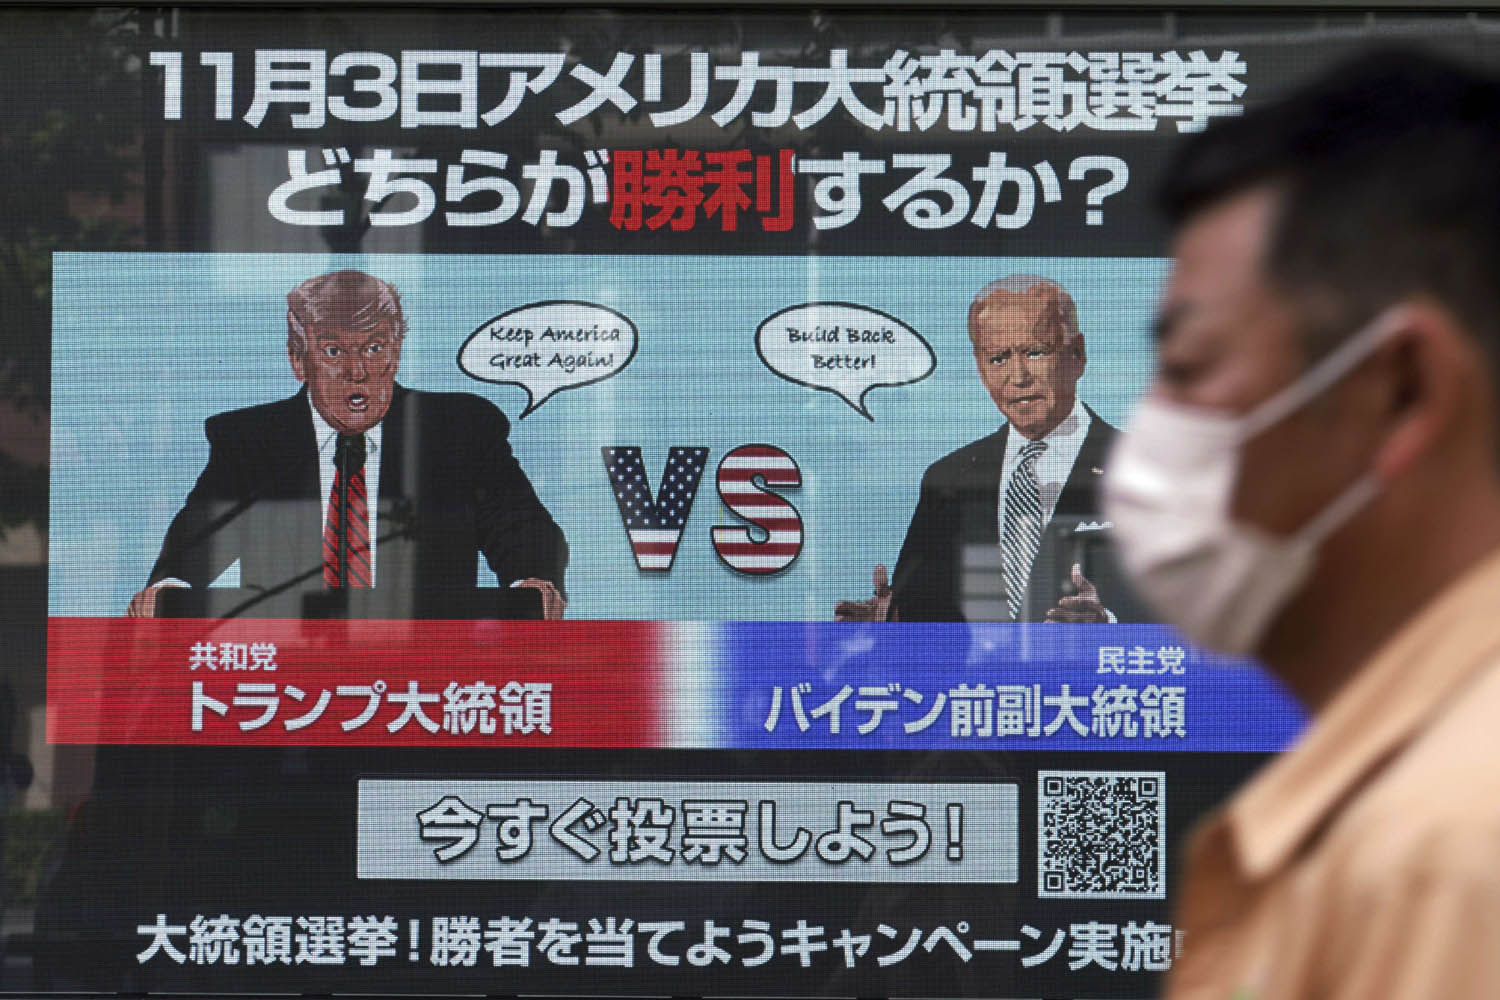 شاشة عملاقة تعرض مناظرة ترامب بايدن في طوكيو